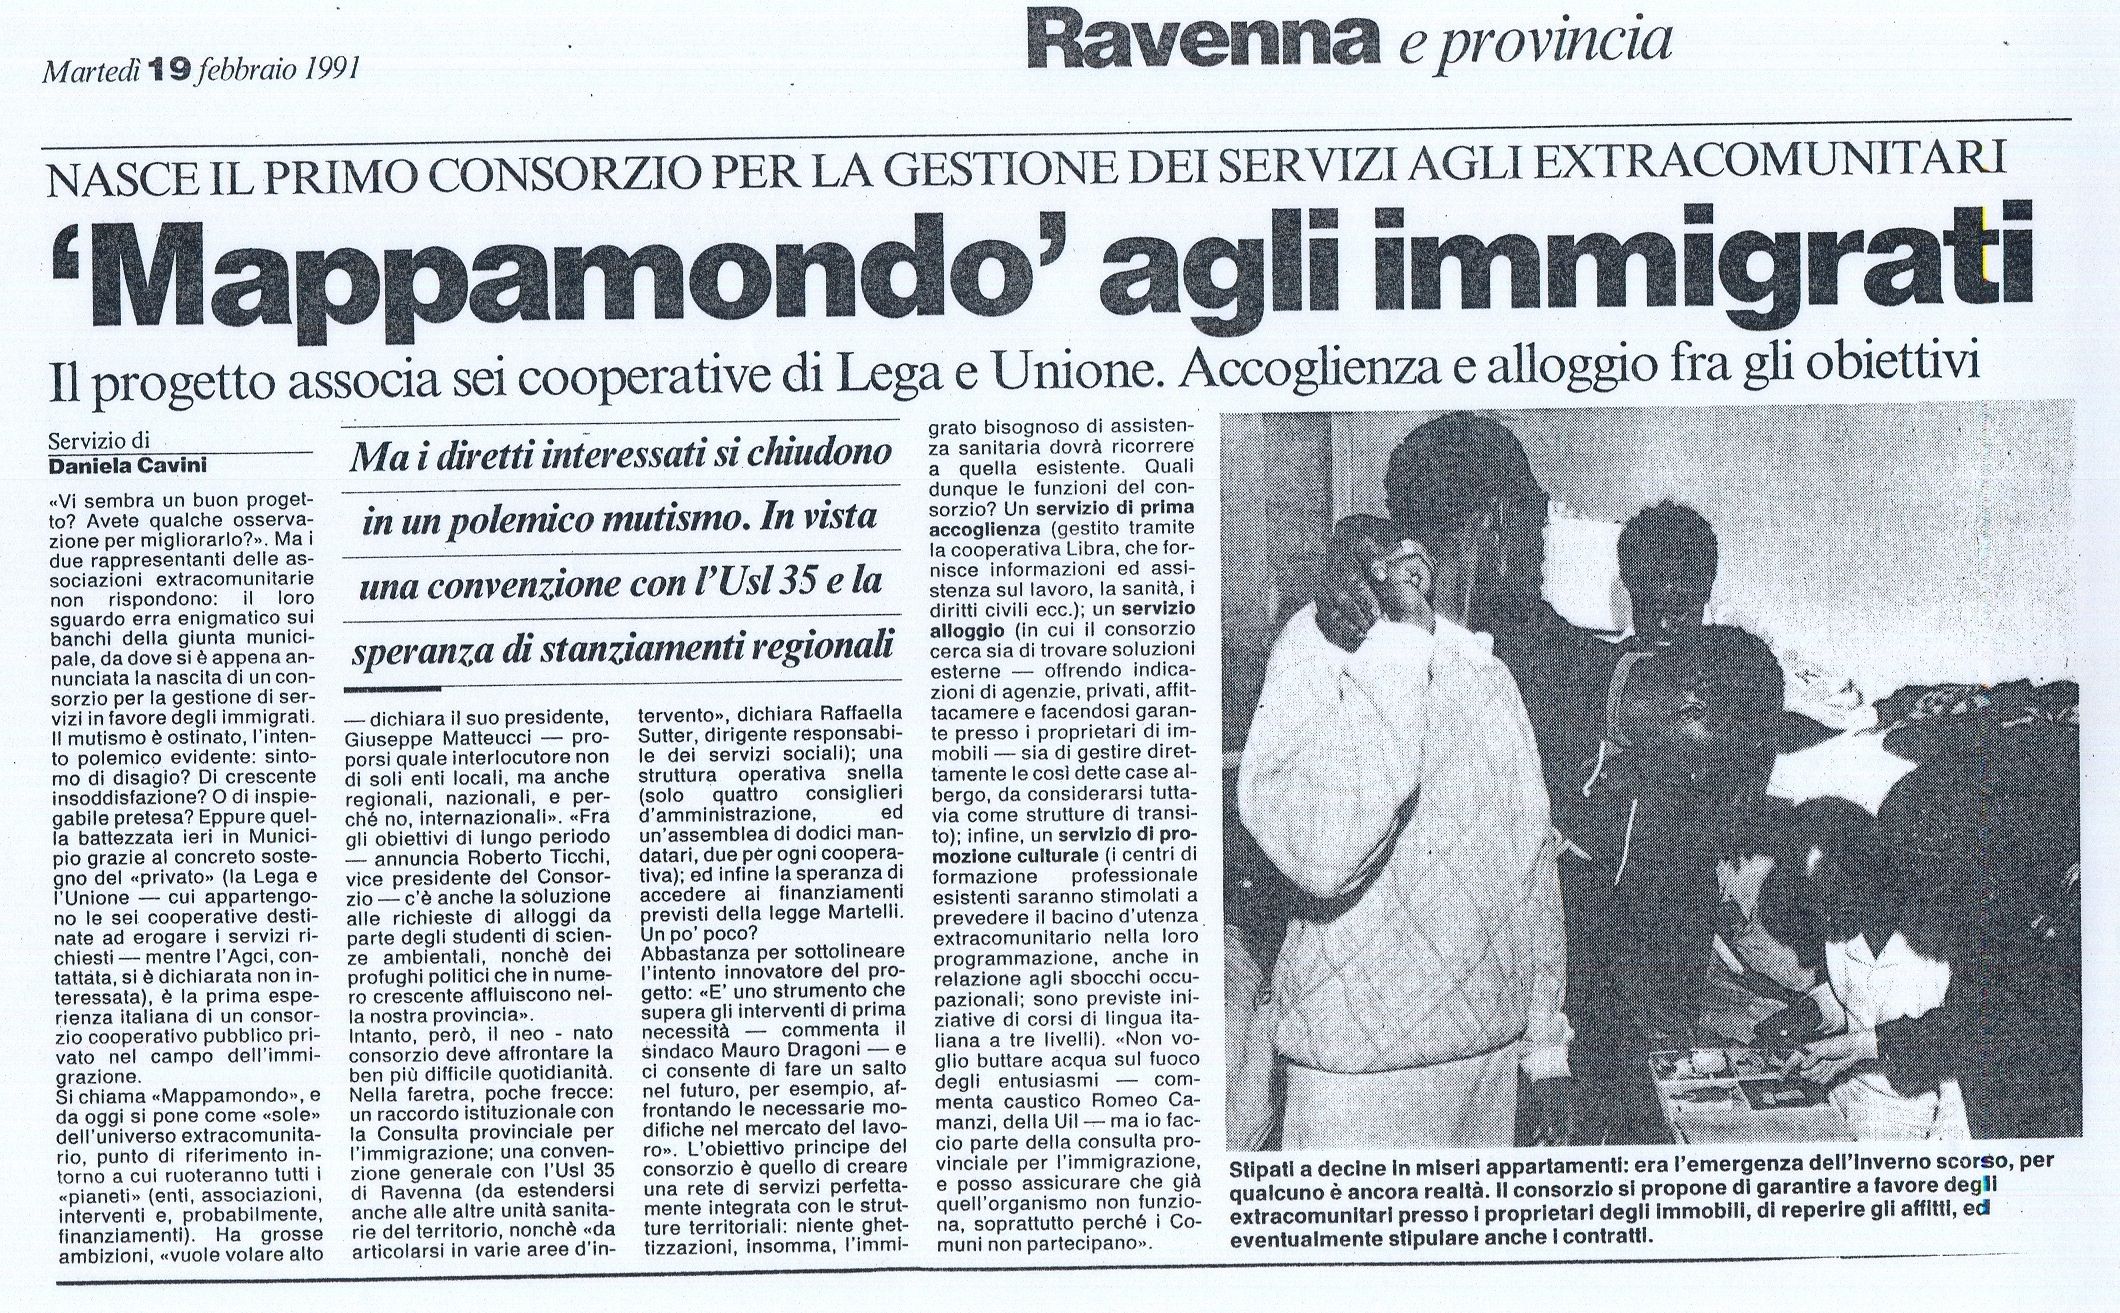 Mappamondo agli immigrati  02-91